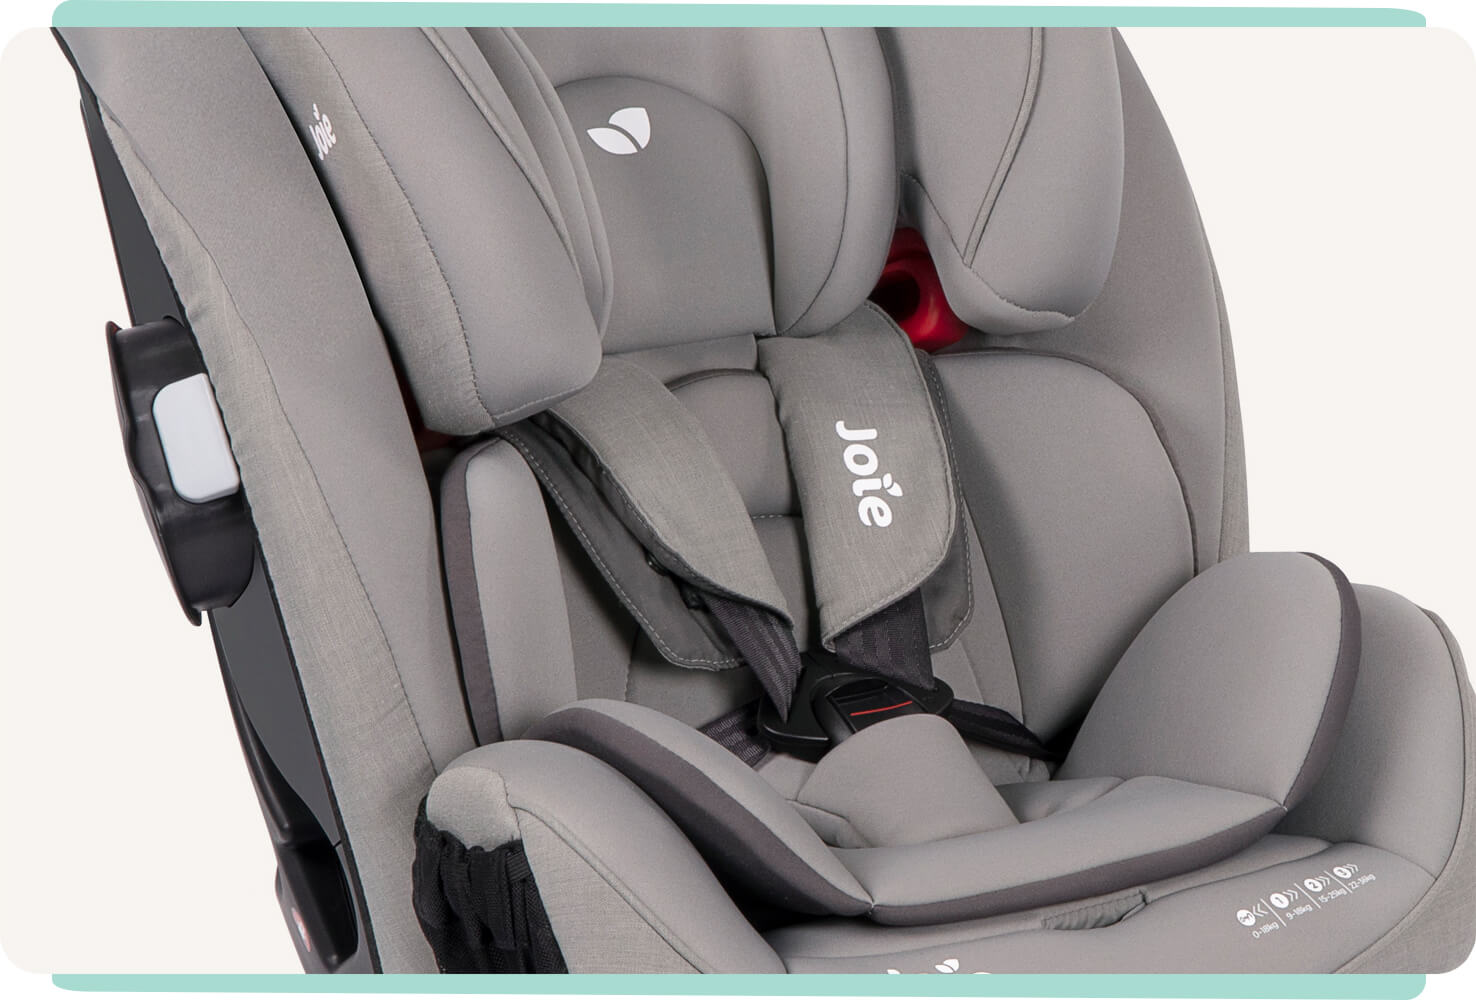 Gros plan sur un siège auto Joie Every Stage FX, coloris gris clair, montrant le harnais à 5 points et l’insert pour bébé.